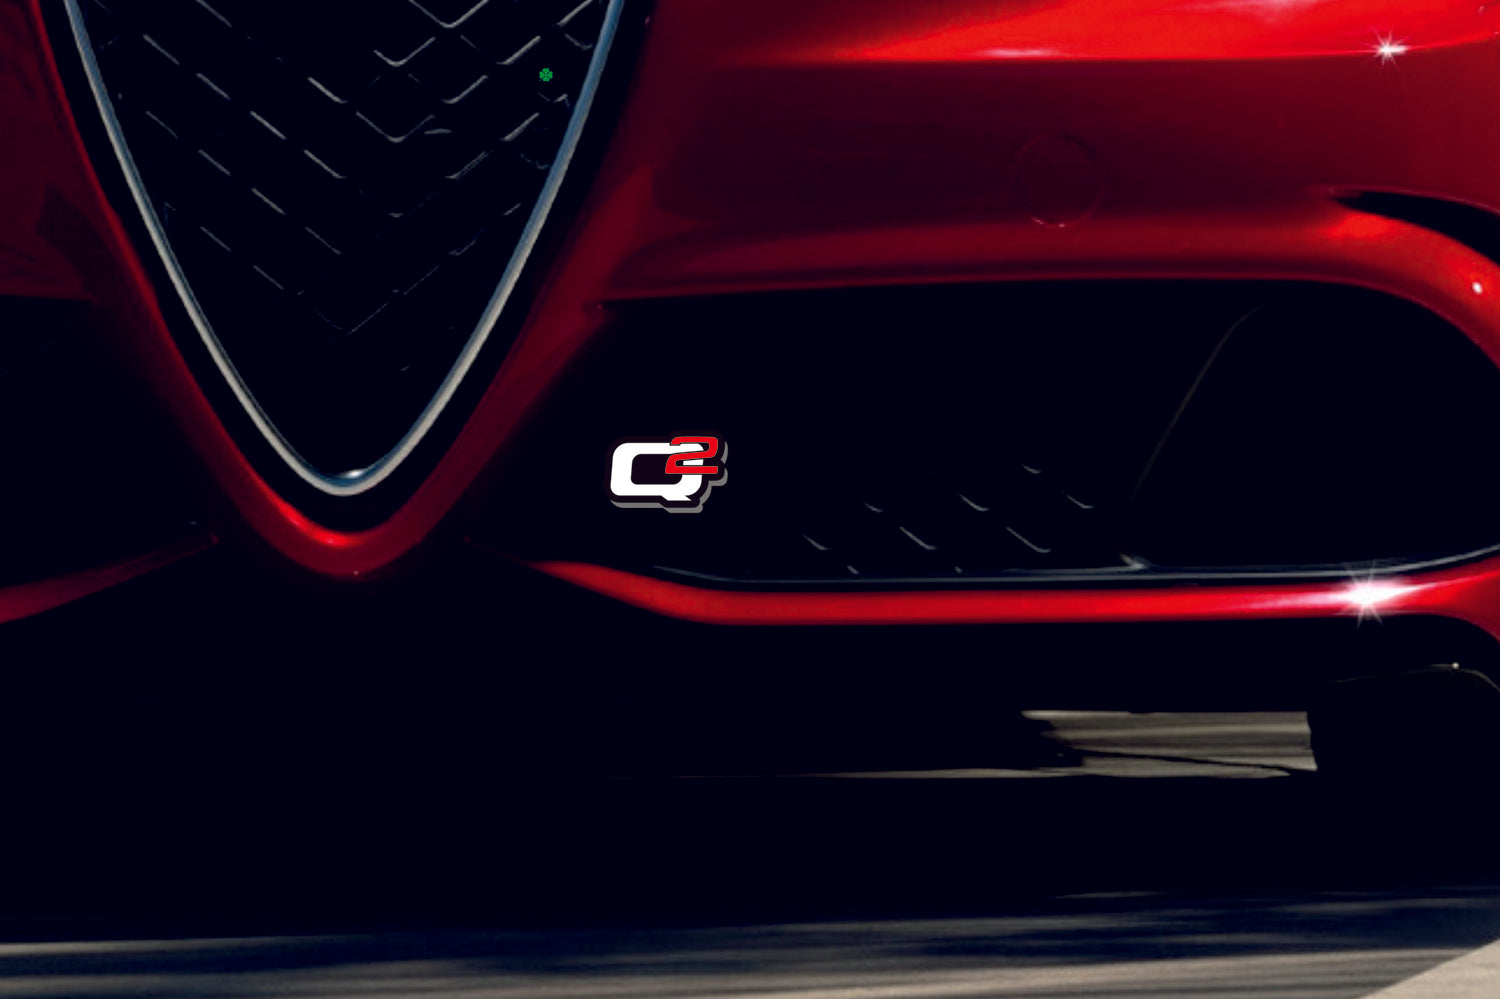 Alfa Romeo Emblema da grade do radiador com logotipo Q4